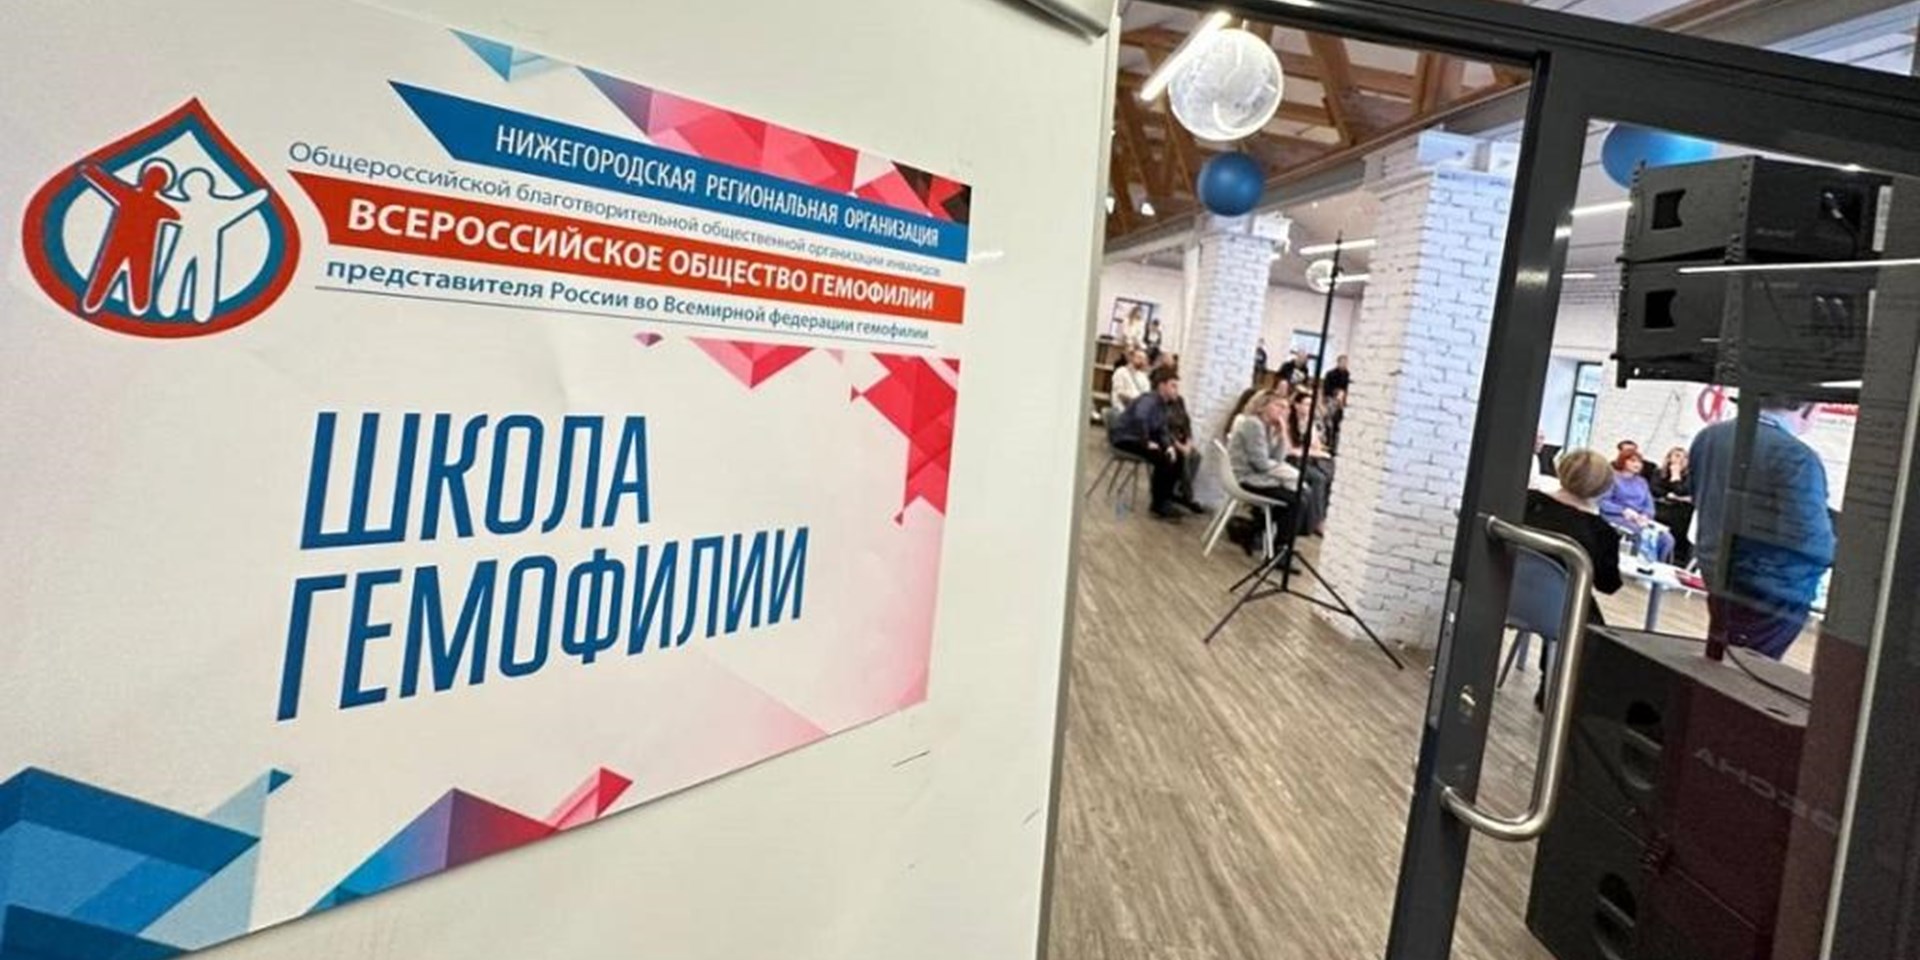 12 ноября 2022 в Нижнем Новгороде состоялась Школа гемофилии